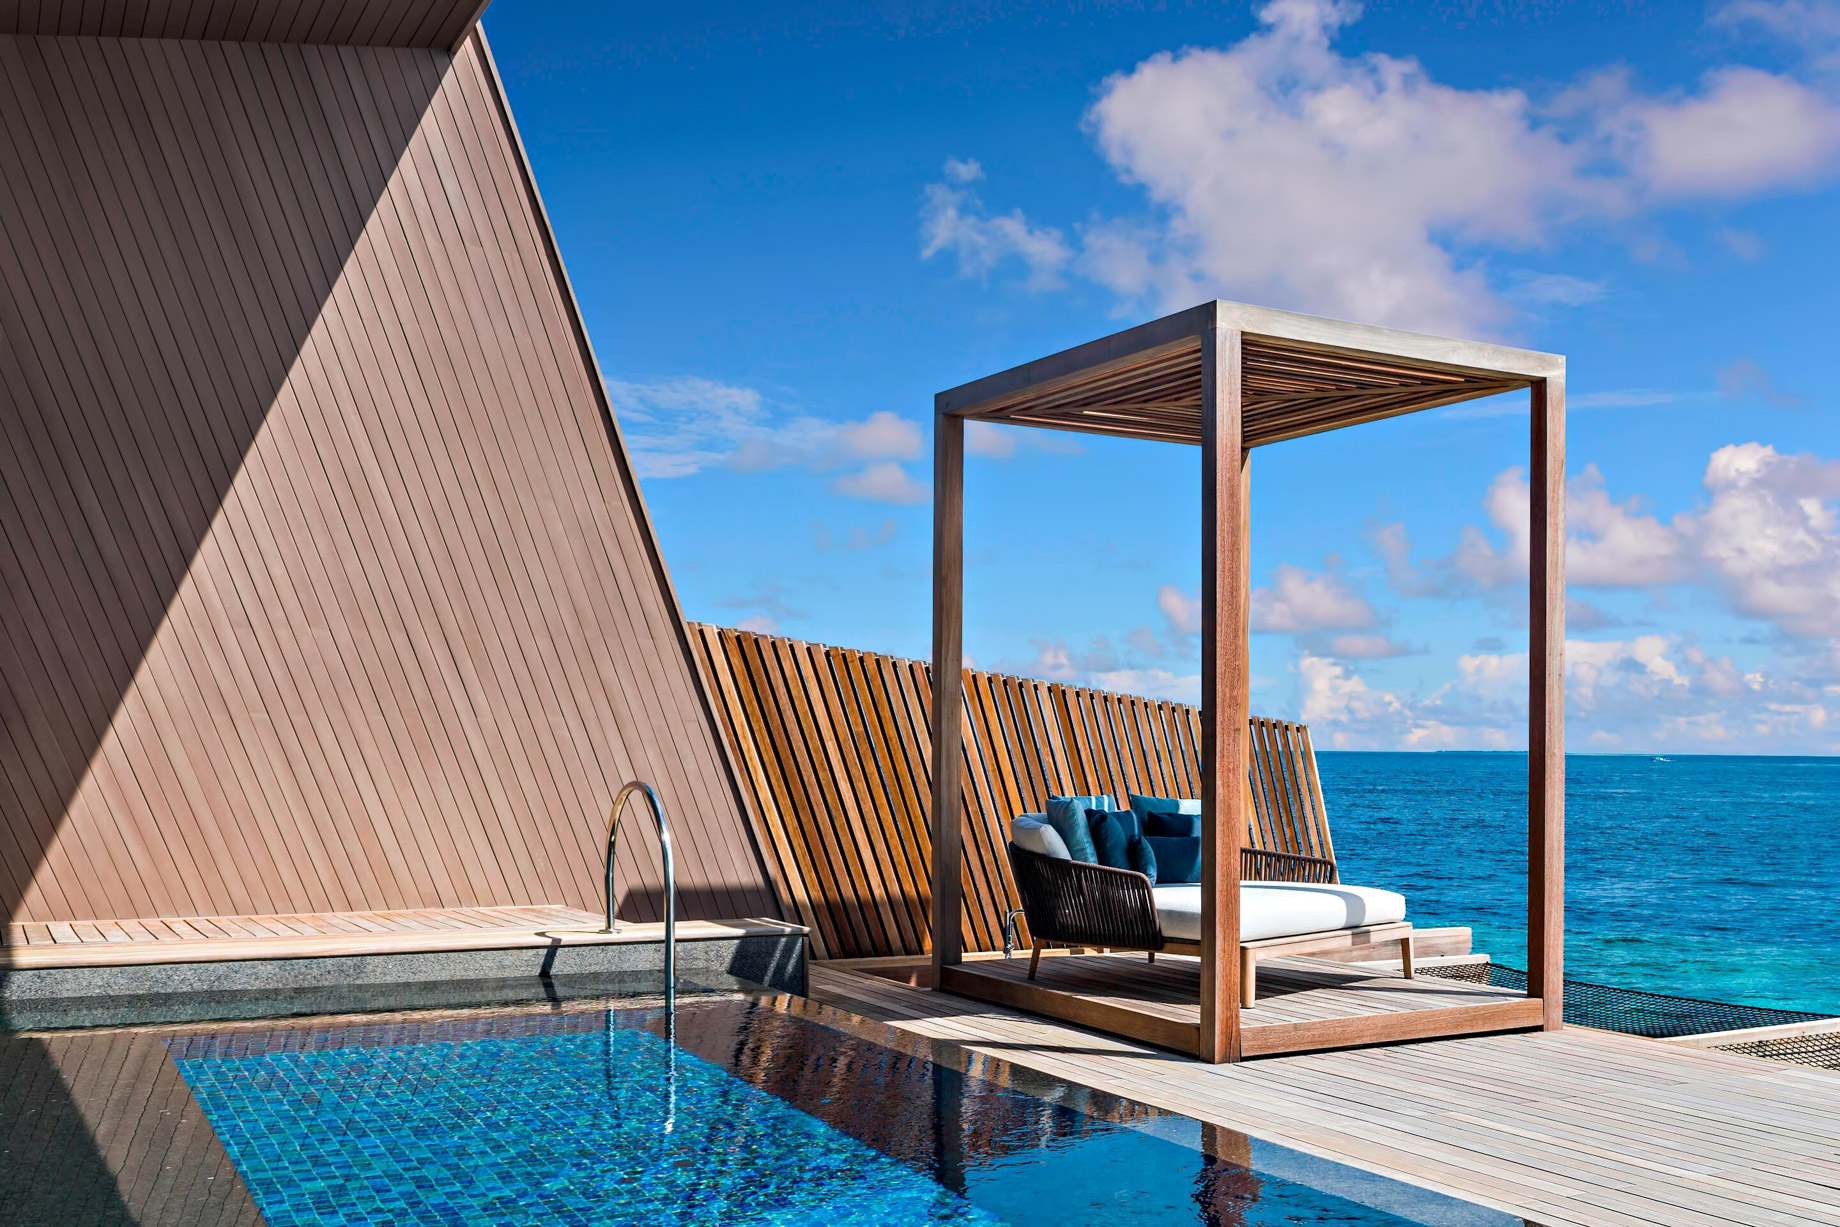 The St. Regis Maldives Vommuli Resort - Dhaalu Atoll, Maldives - St. Regis Overwater Suite Cabana